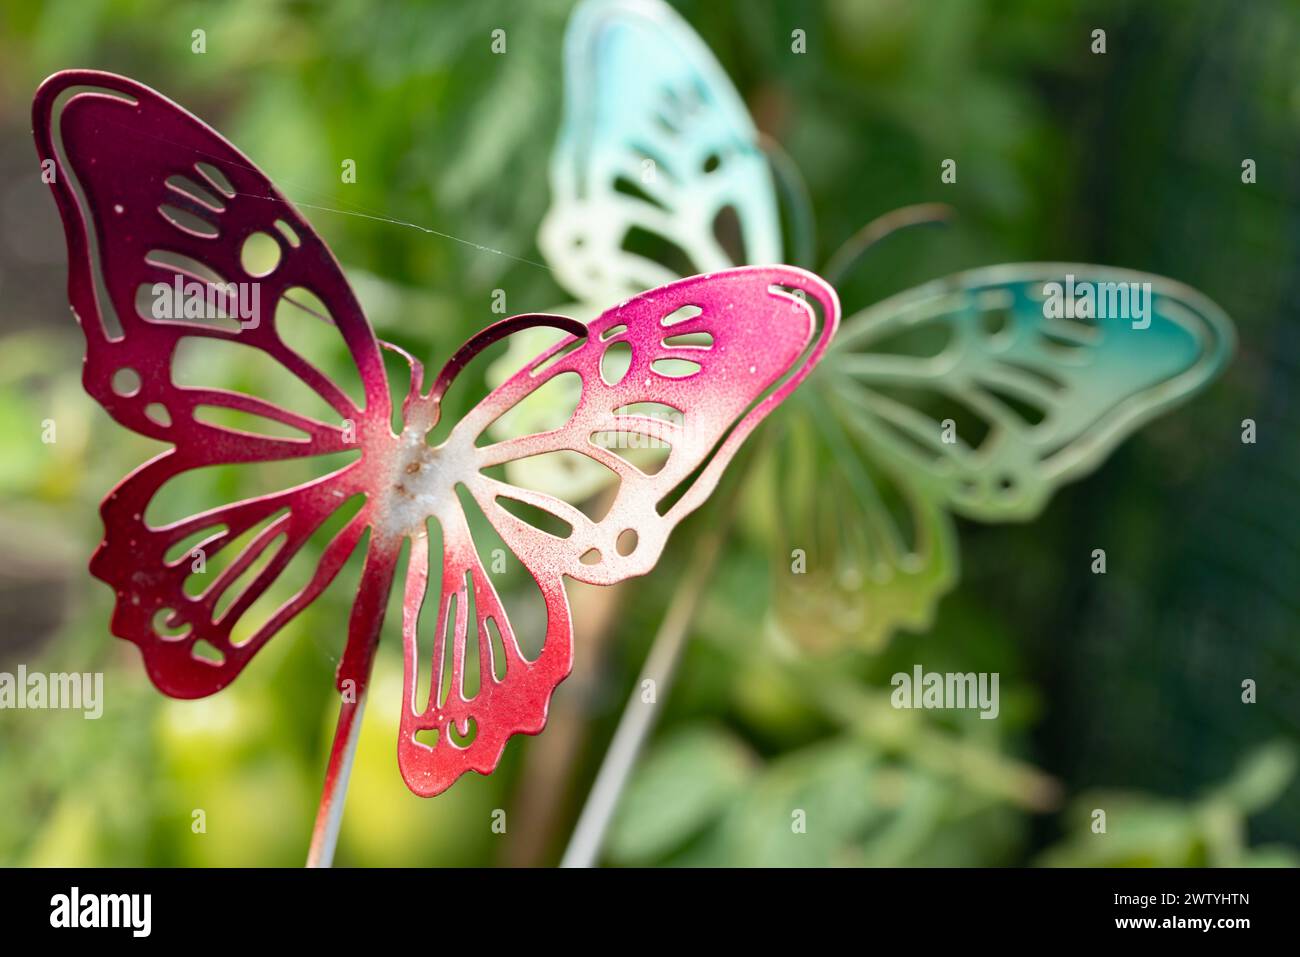 Tre insetti impollinanti, farfalle, sono arroccati su un bastone in un giardino. Questi artropodi sono importanti per la riproduzione vegetale e sono disponibili in vari modi Foto Stock